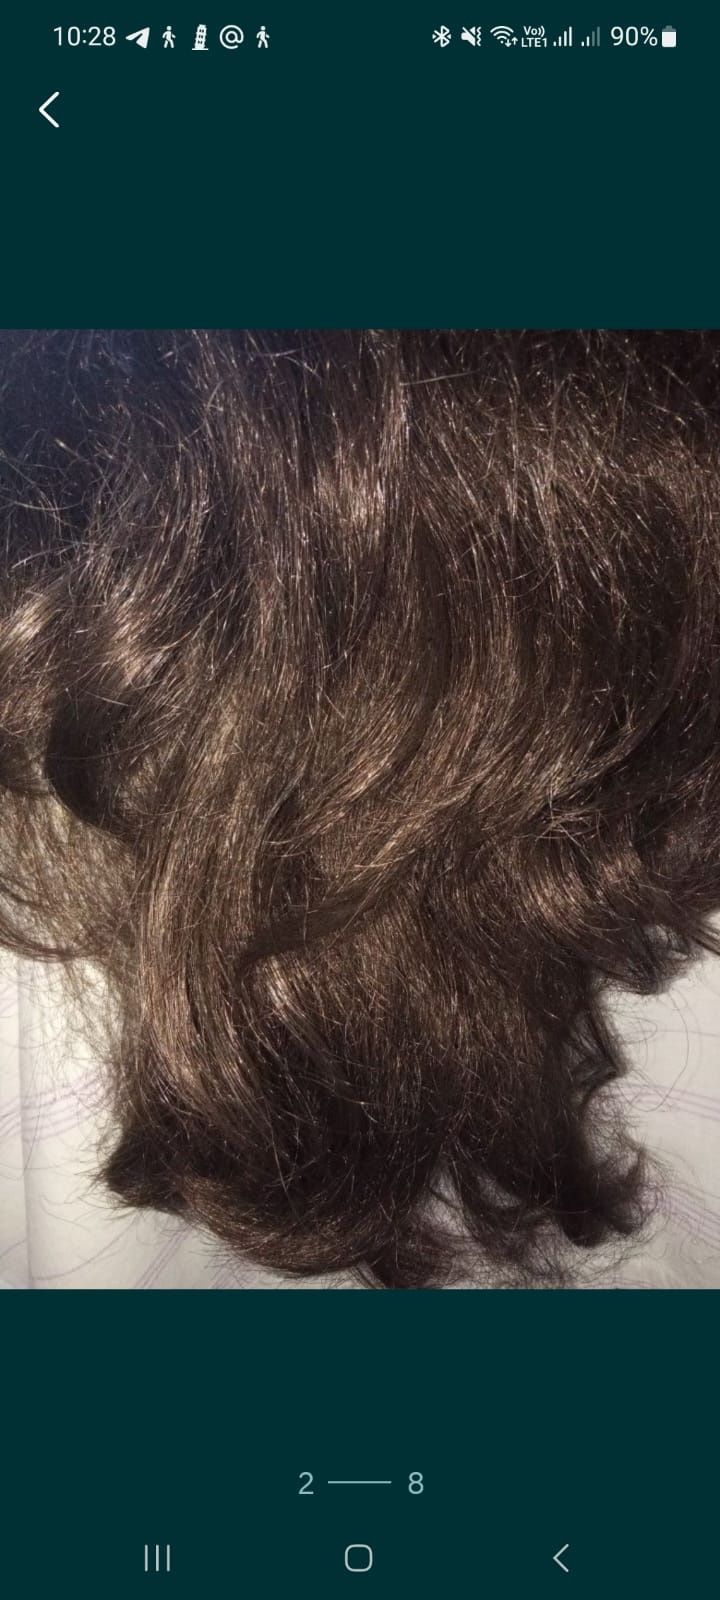 Женский парик,длинные волосы.